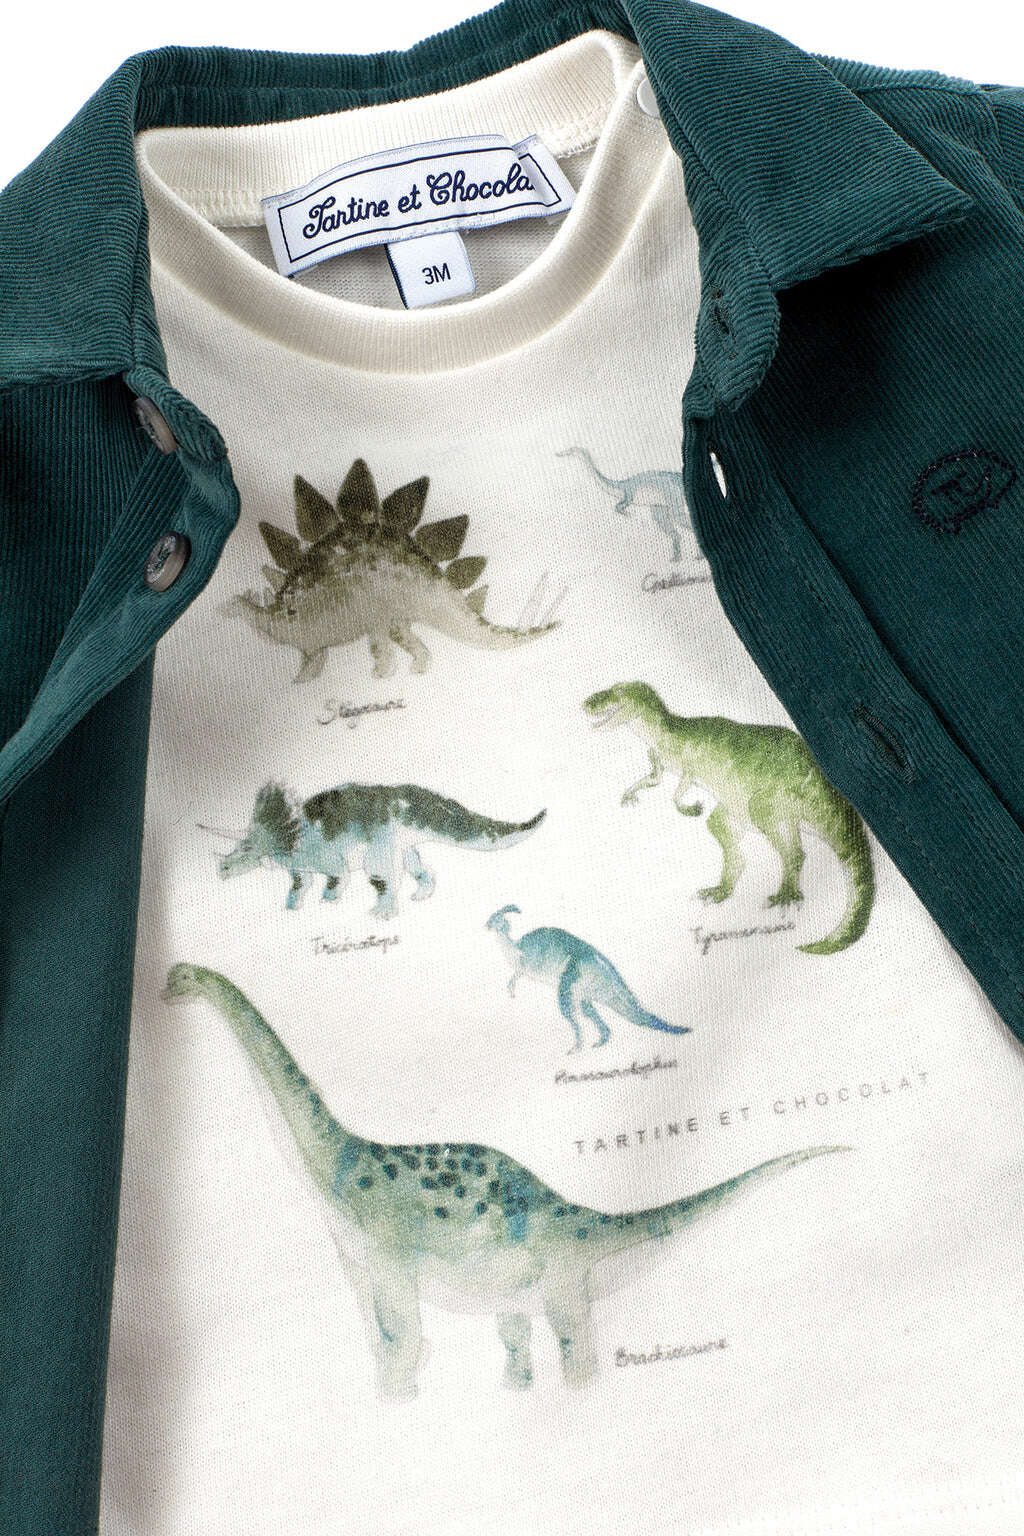 Tee-shirt - Jersey illustration dinosaure